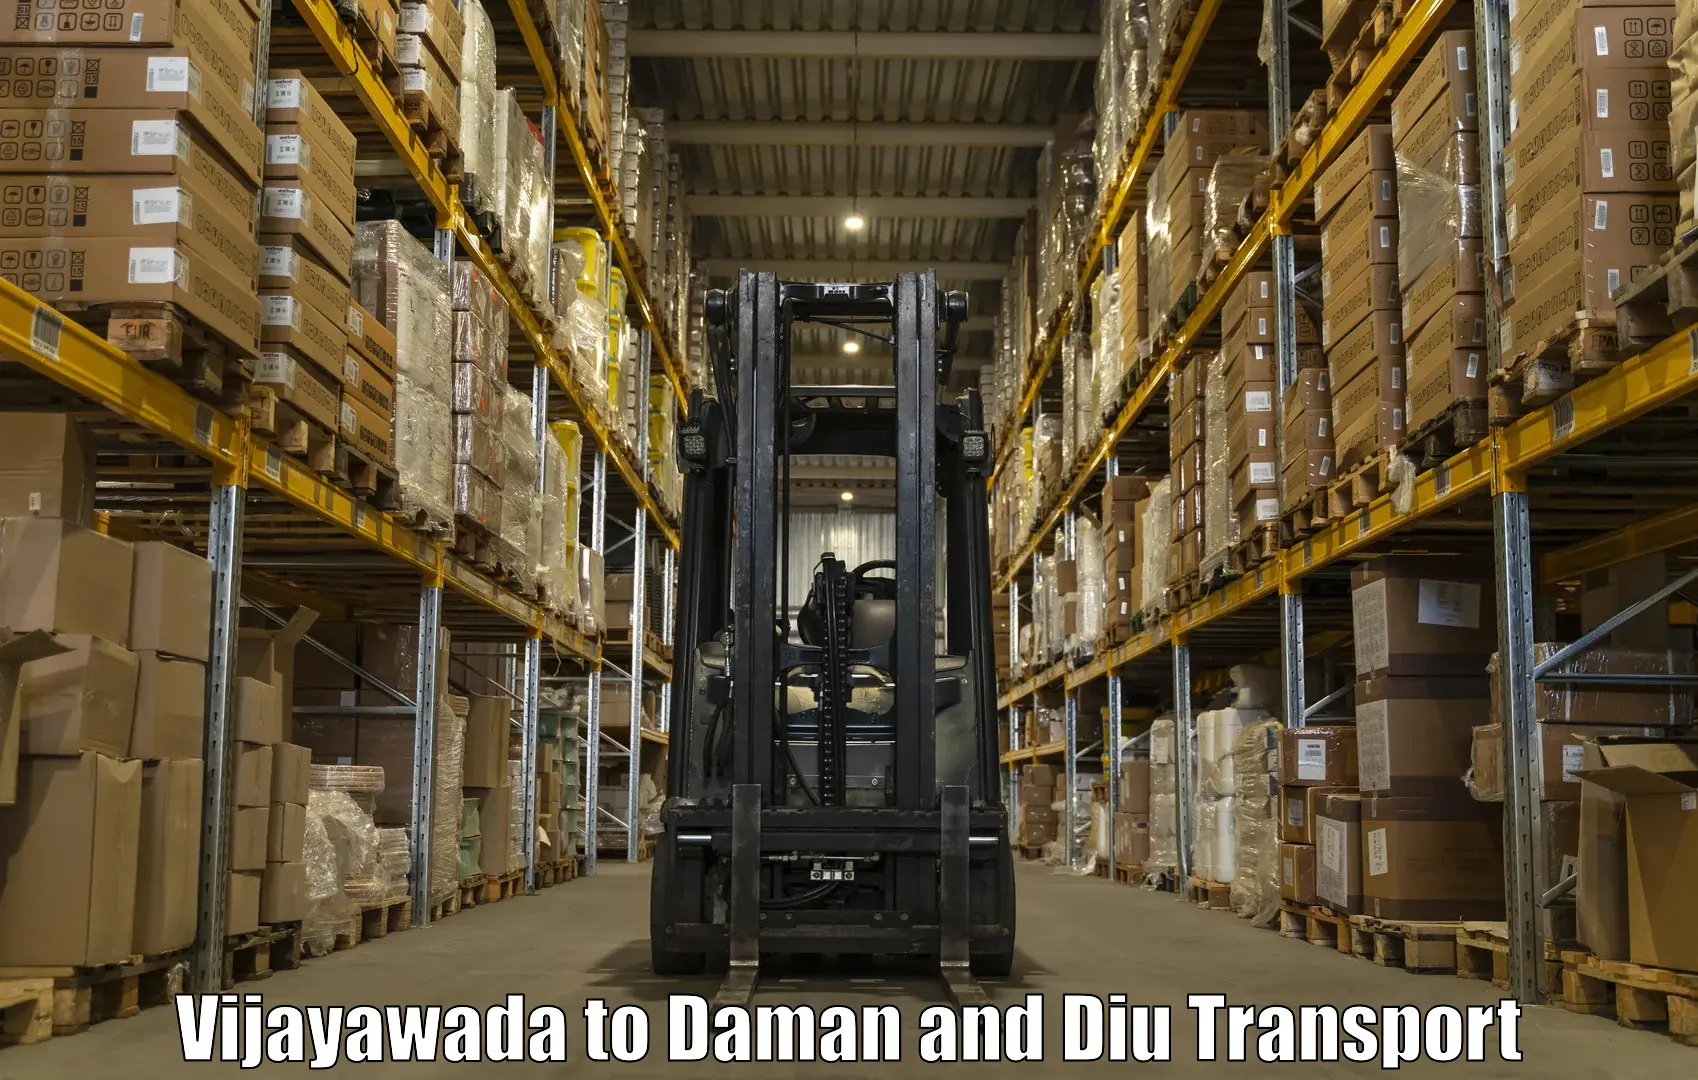 Cargo train transport services Vijayawada to Daman and Diu